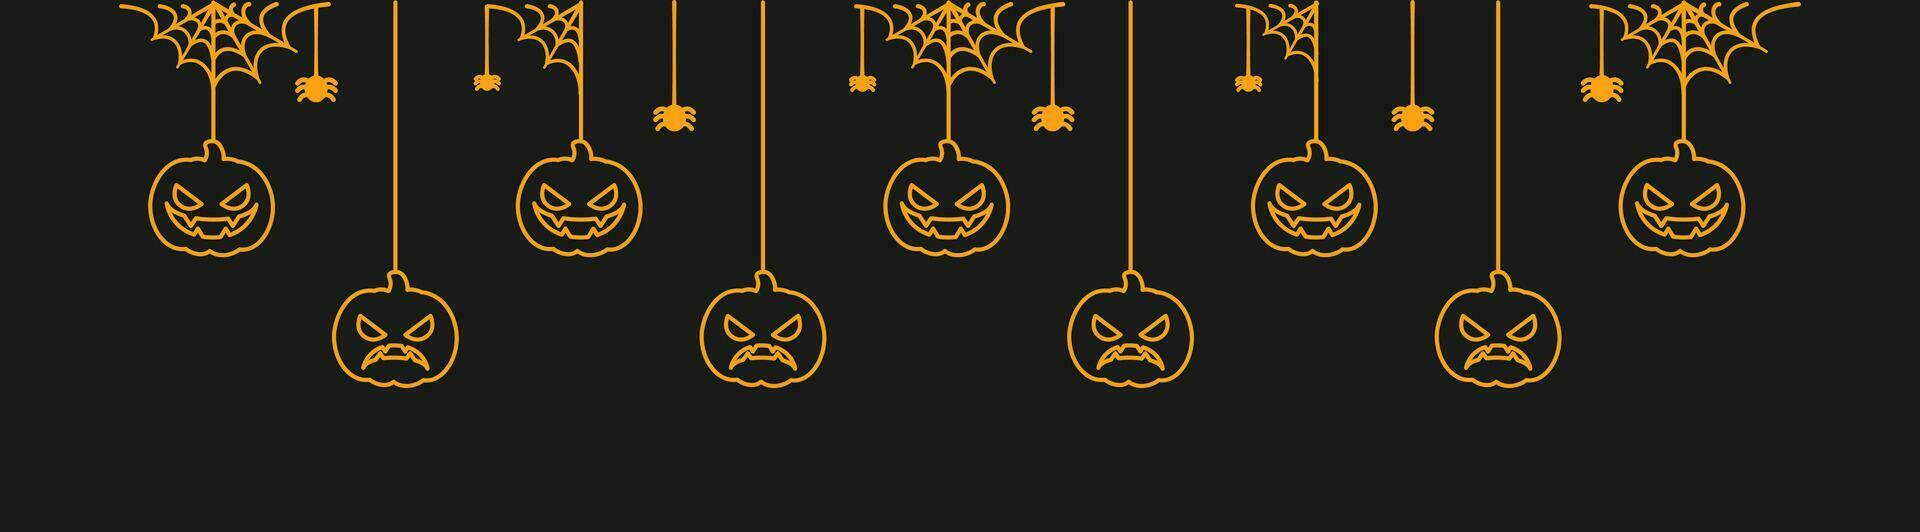 gelukkig halloween banier of grens met gloeiend jack O lantaarn pompoenen. hangende spookachtig ornamenten decoratie vector illustratie, truc of traktatie partij uitnodiging